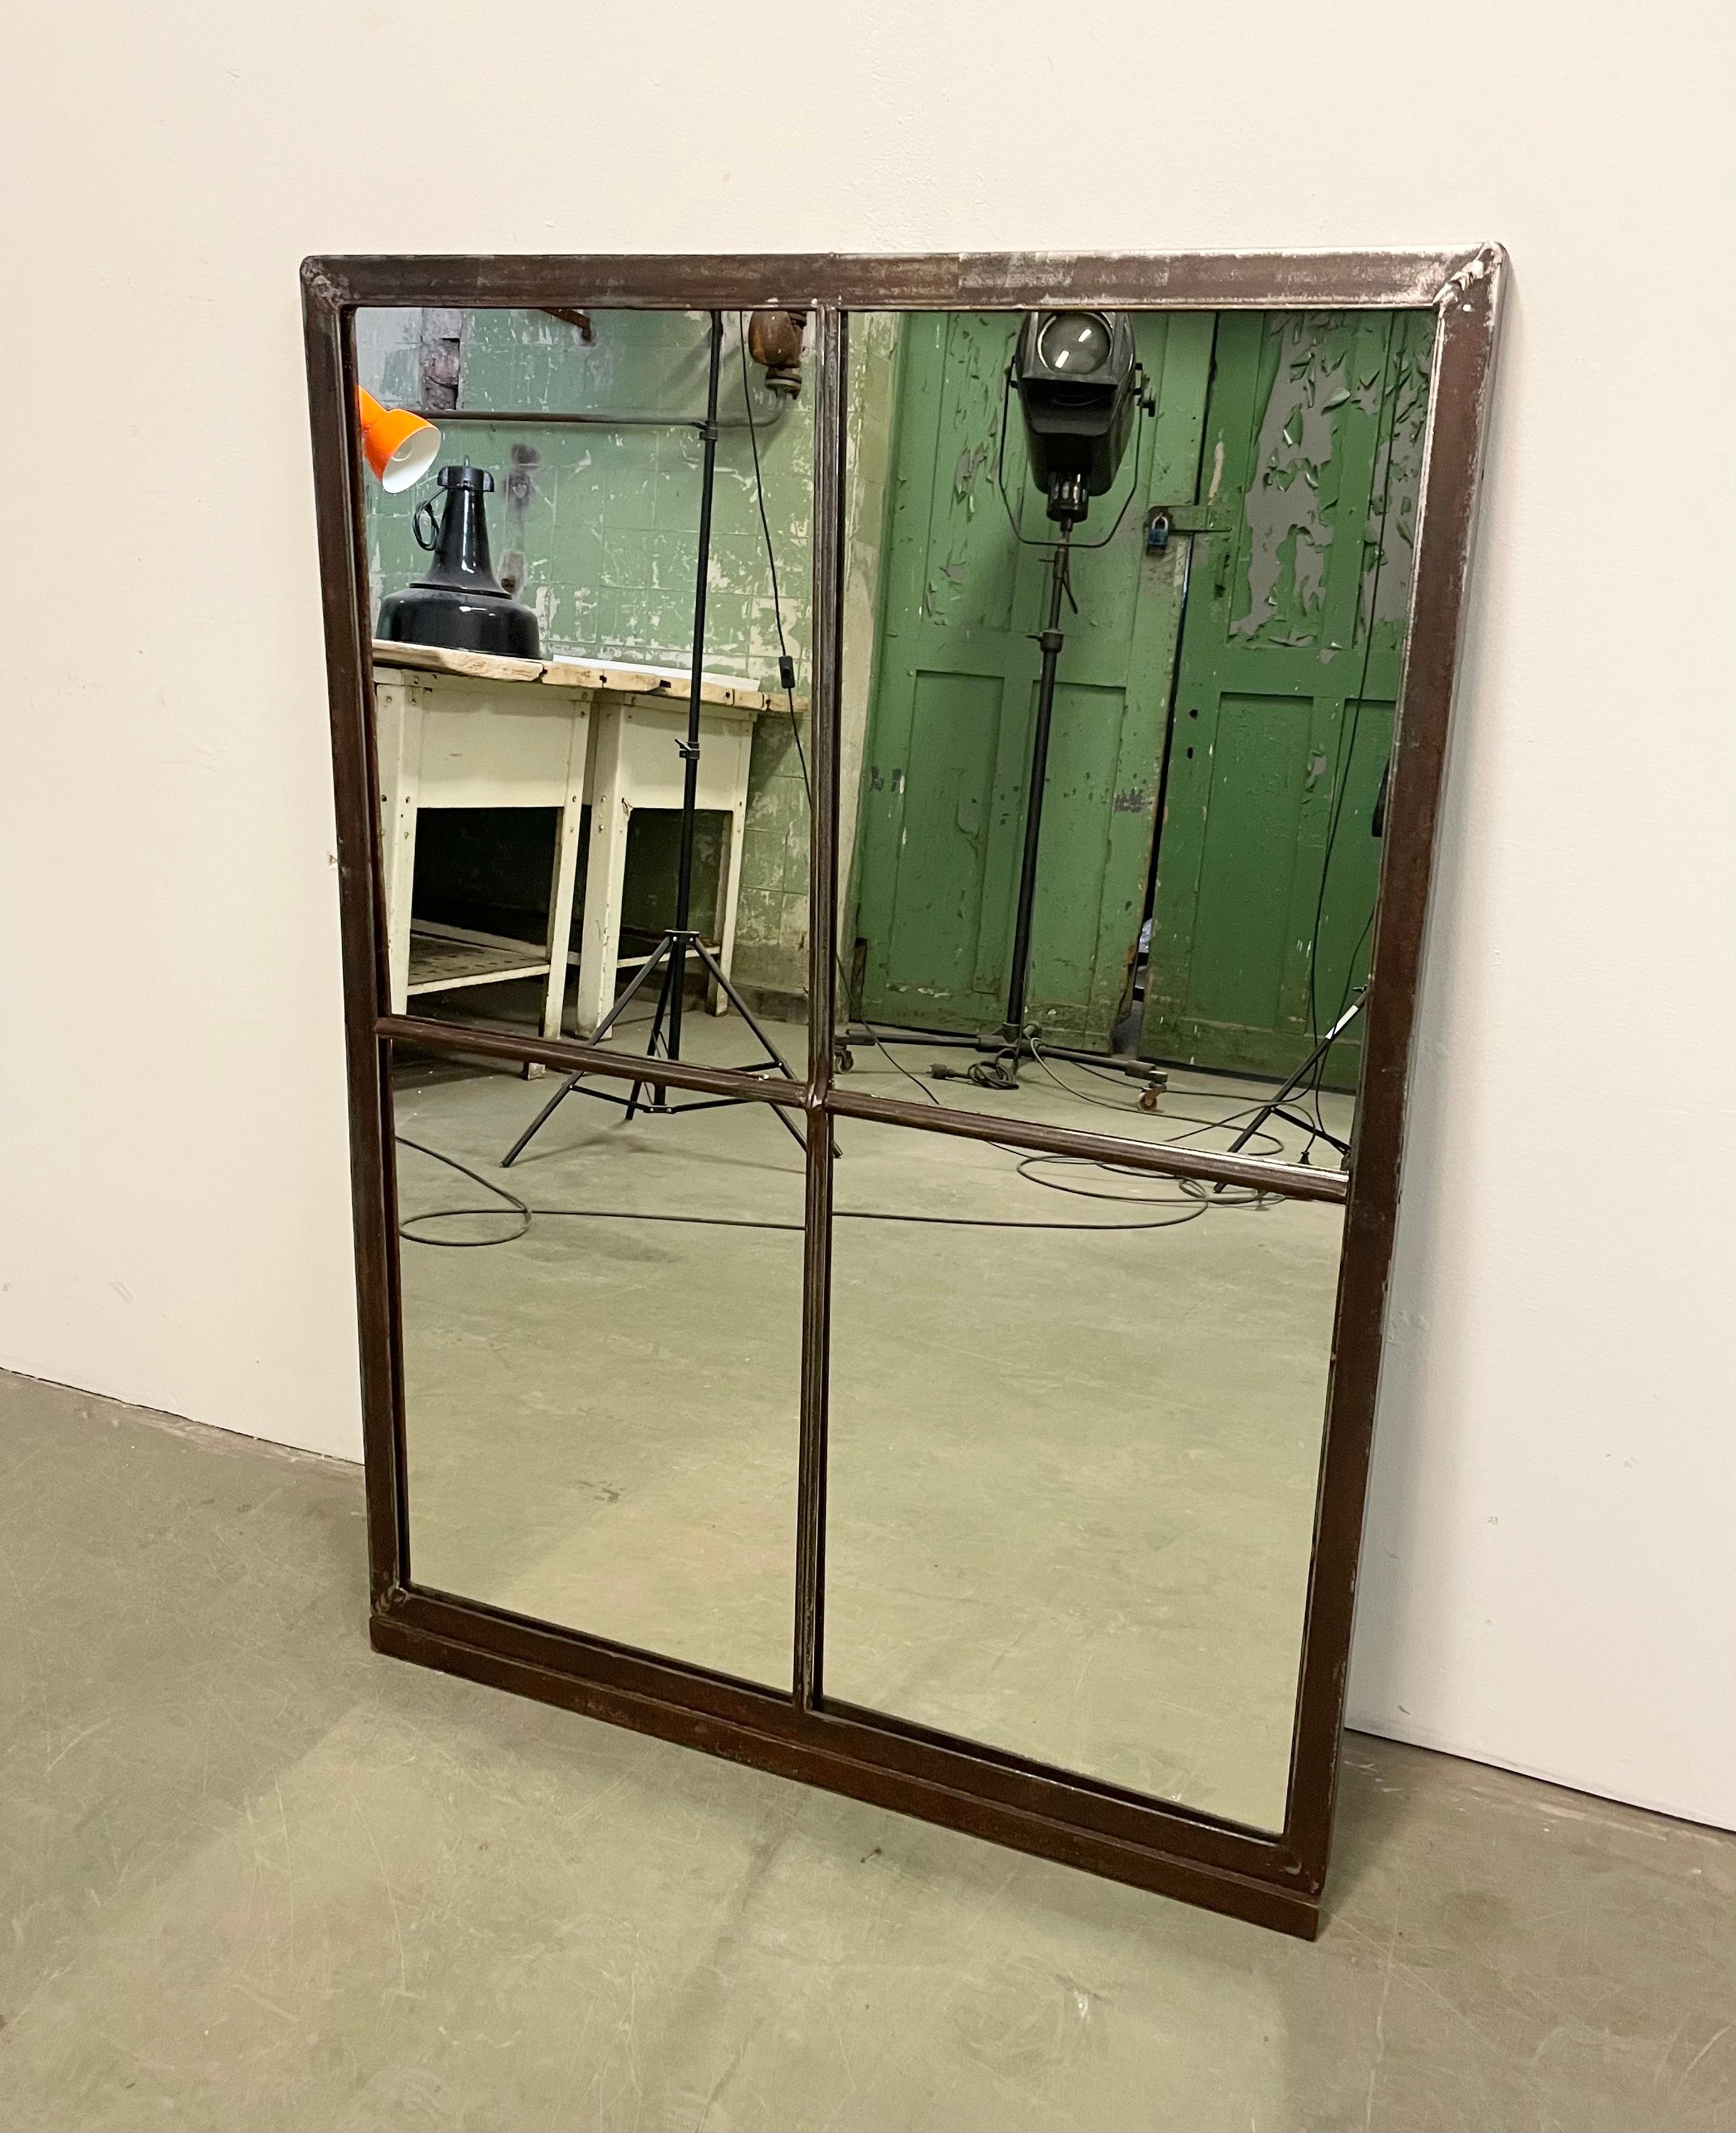 Ce cadre de fenêtre industriel en fer a été transformé en miroir. Le poids du miroir est de 17 kg.